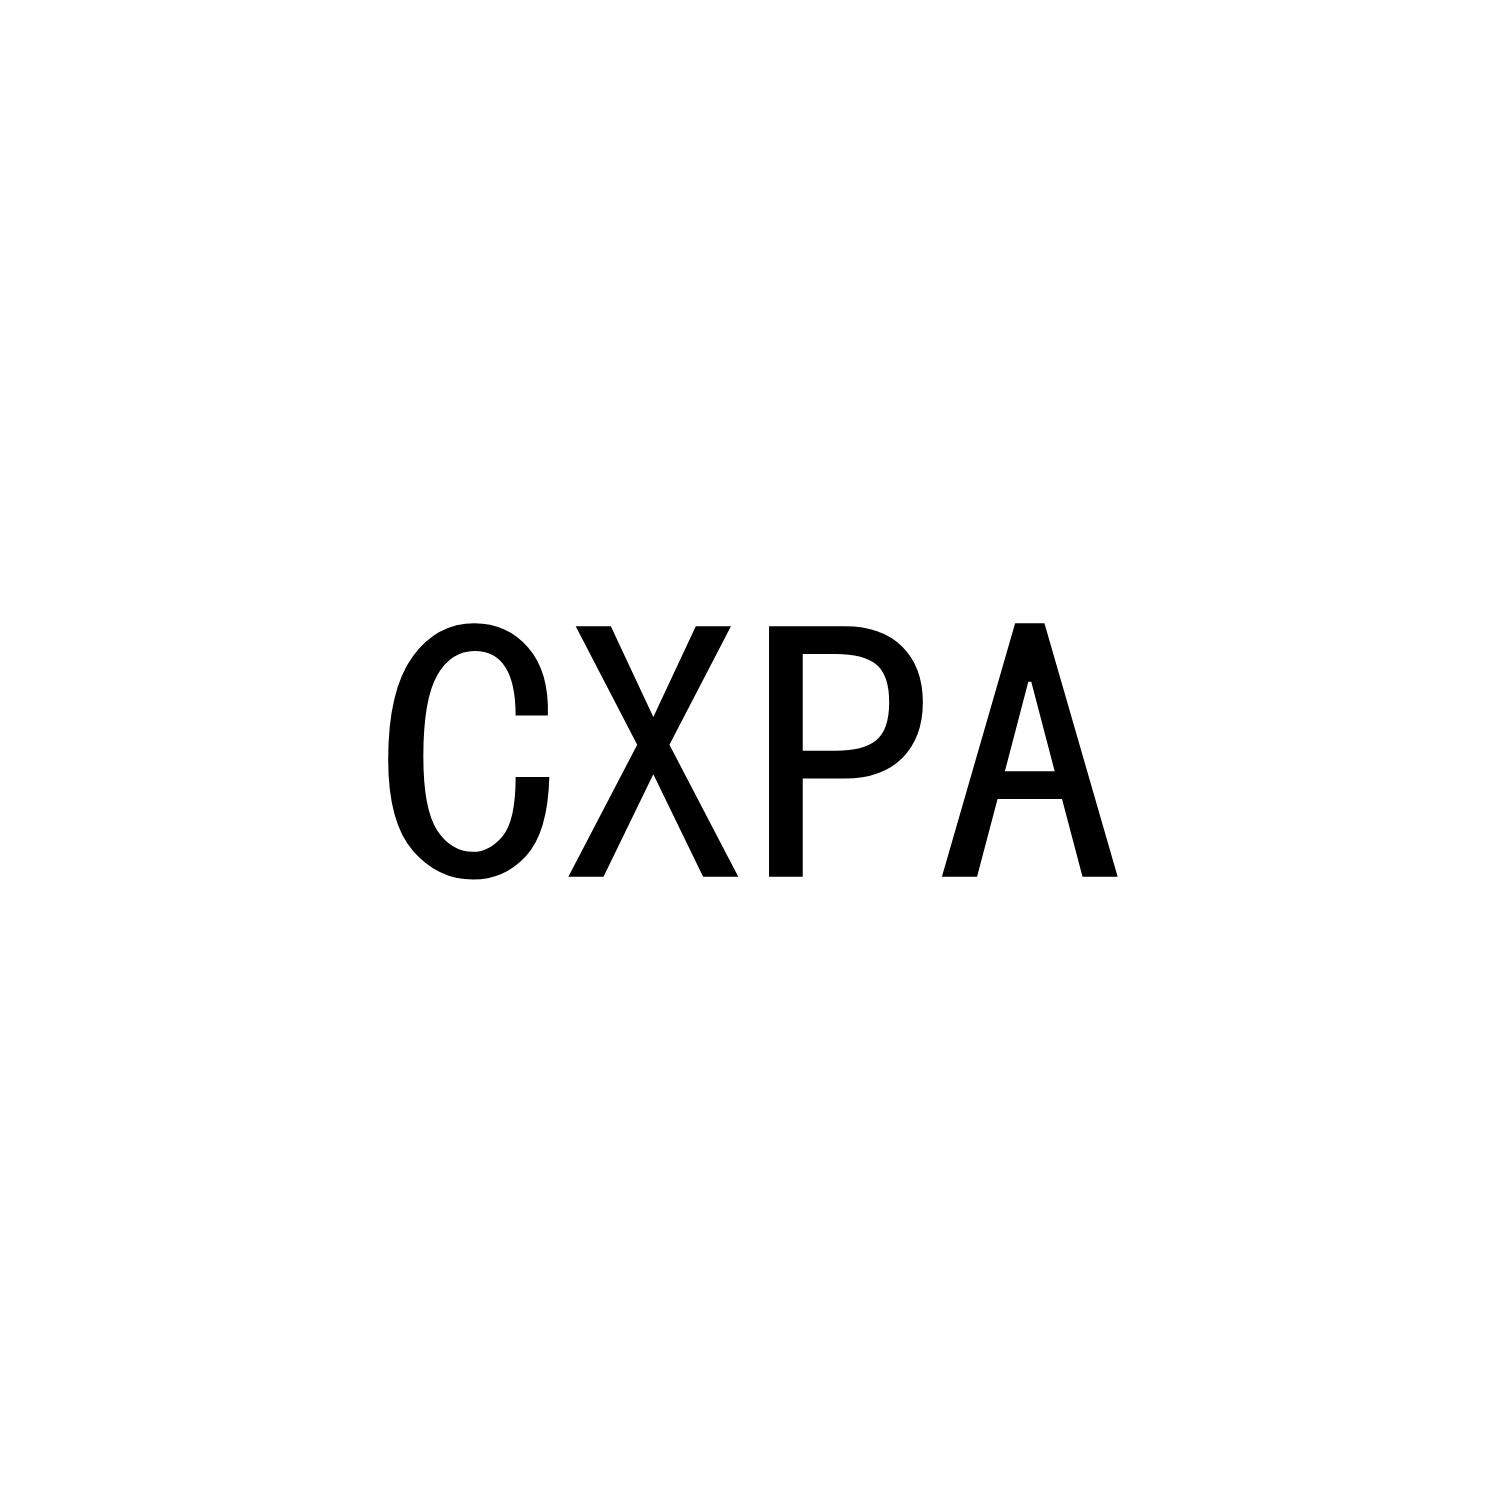 CXPA